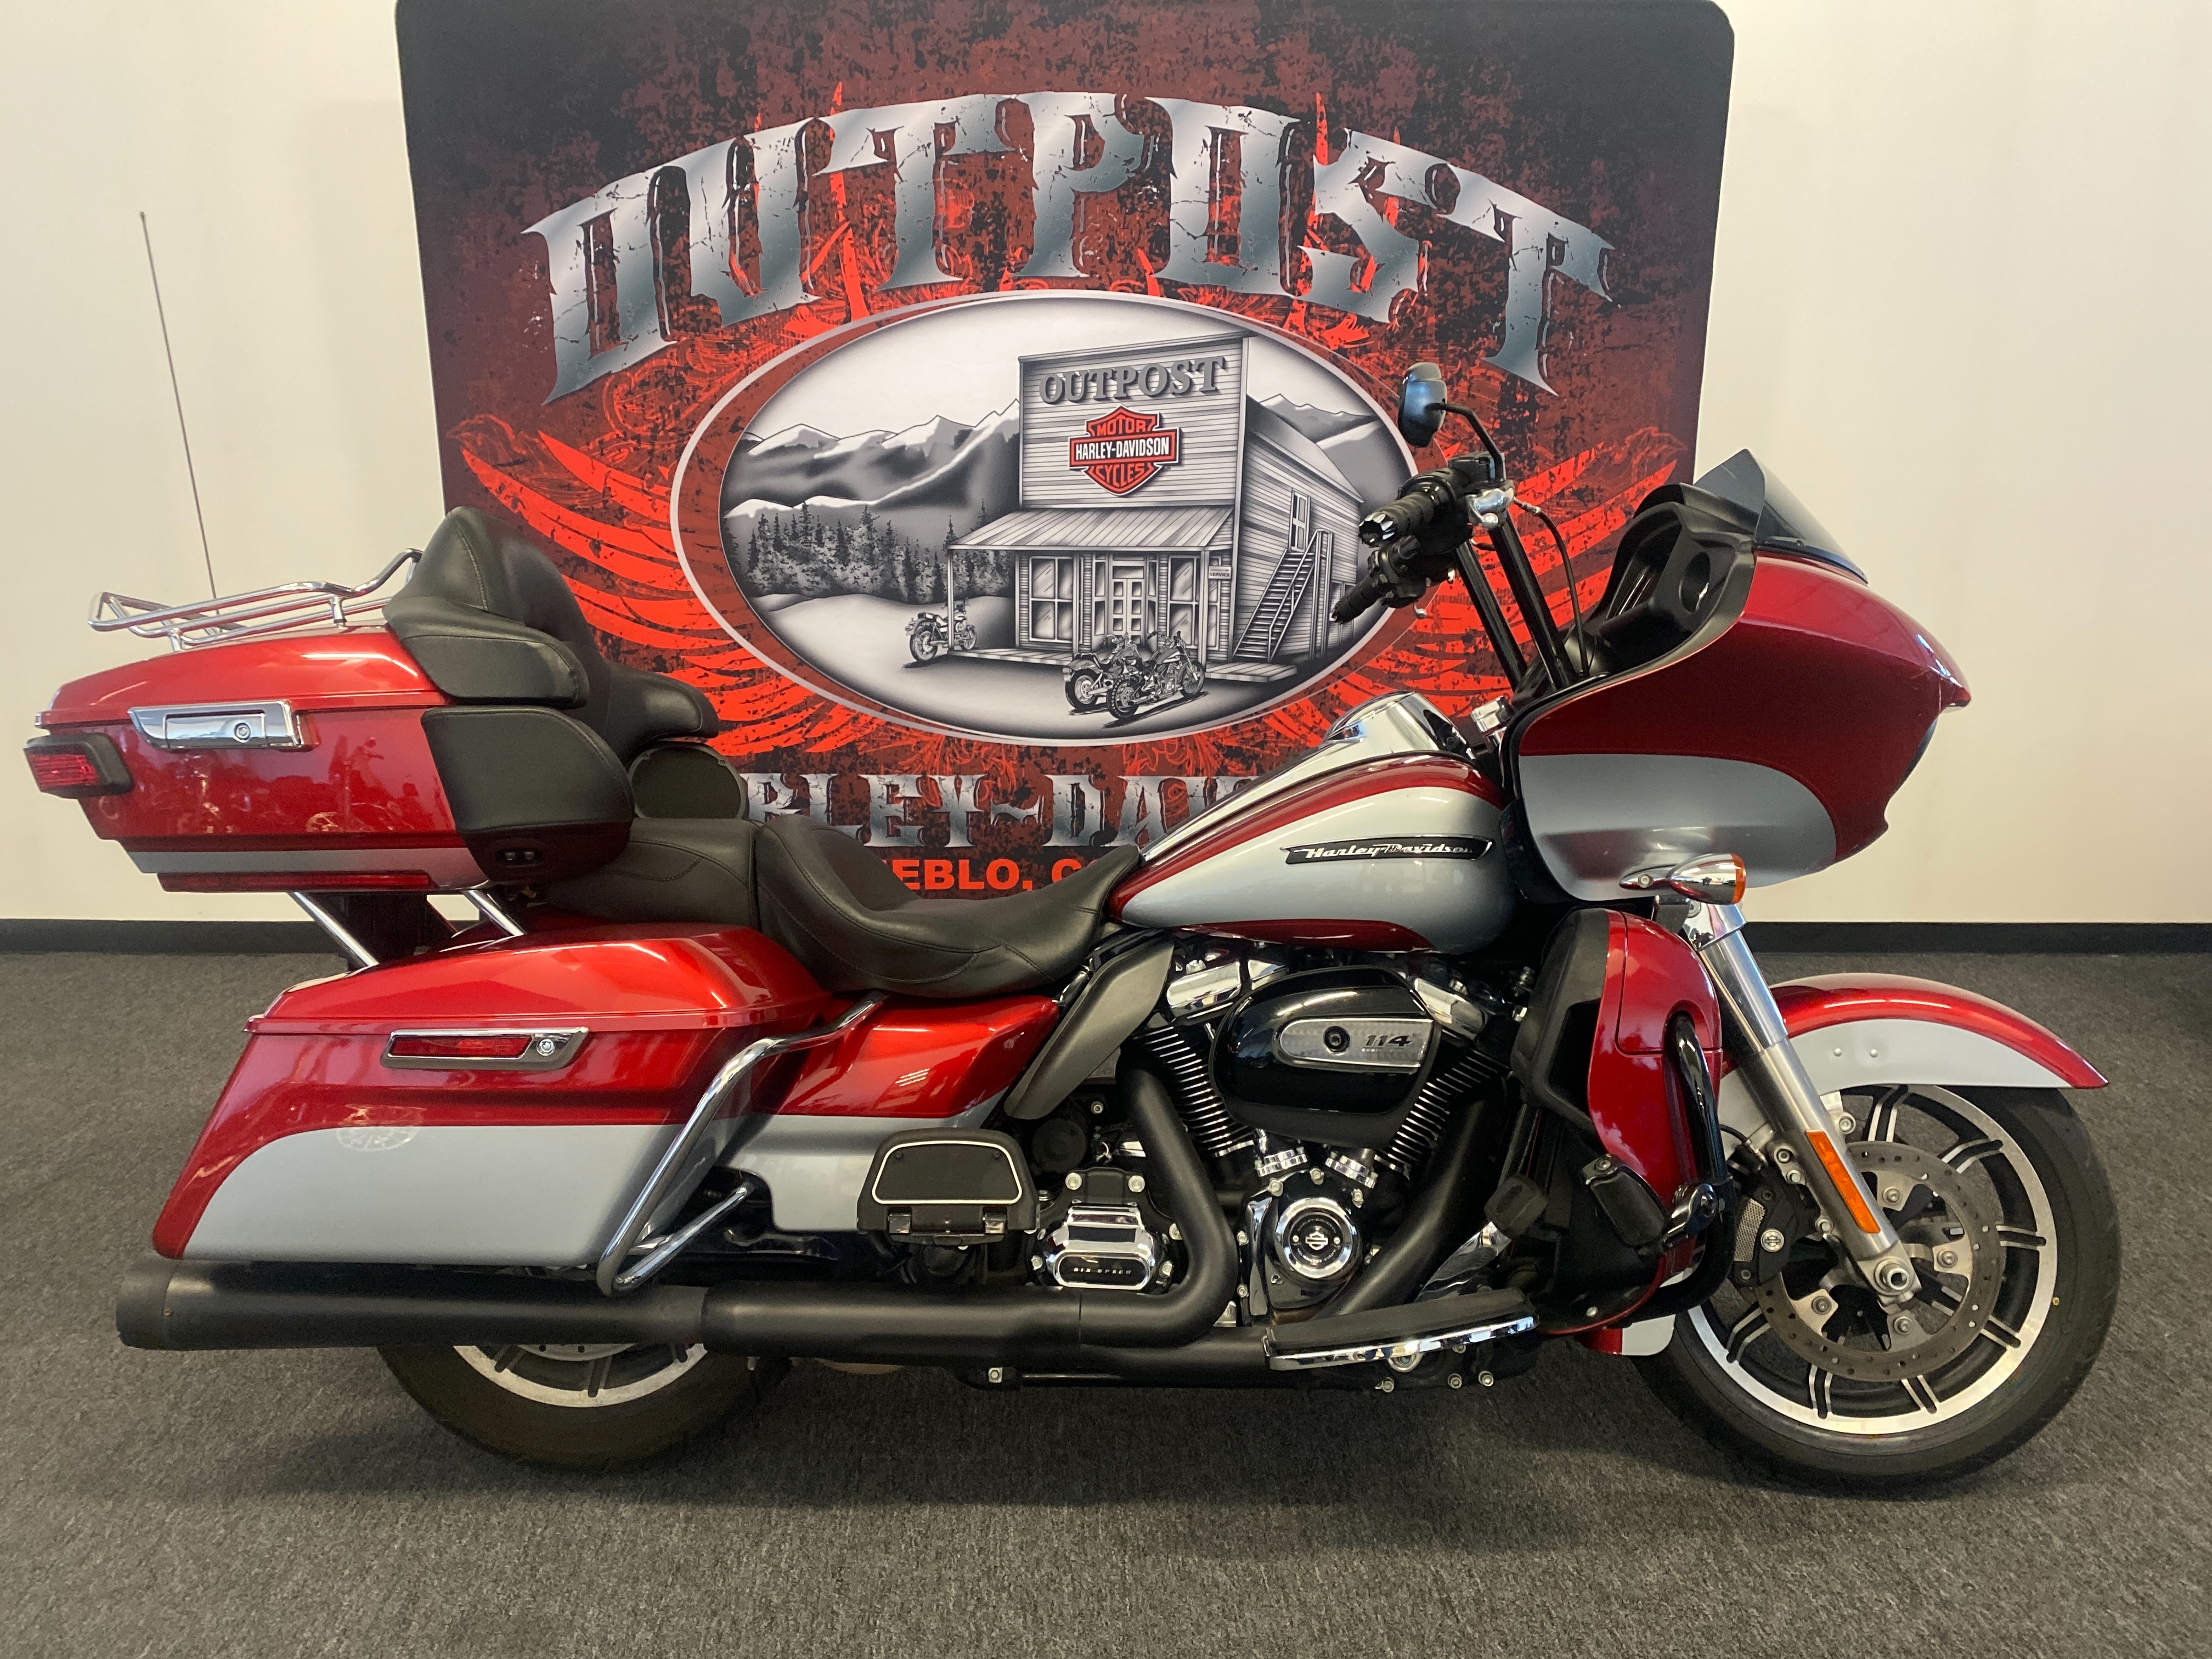 2019 Harley-Davidson Road Glide Ultra at Outpost Harley-Davidson